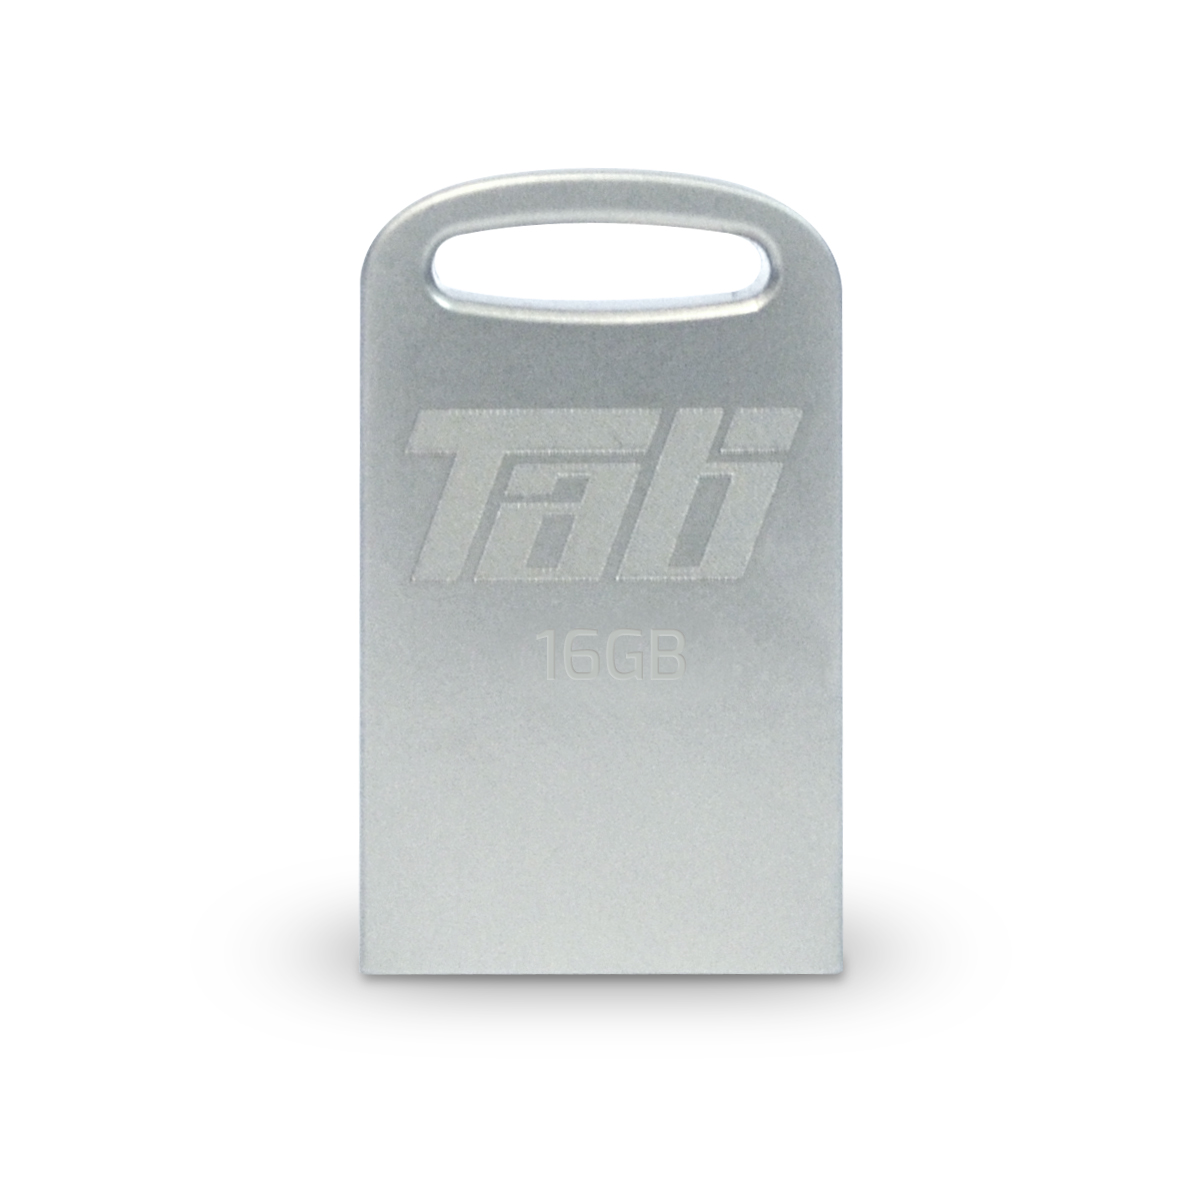 Flash Drive Patriot Tab USB 3.1 Gen.1 16GB